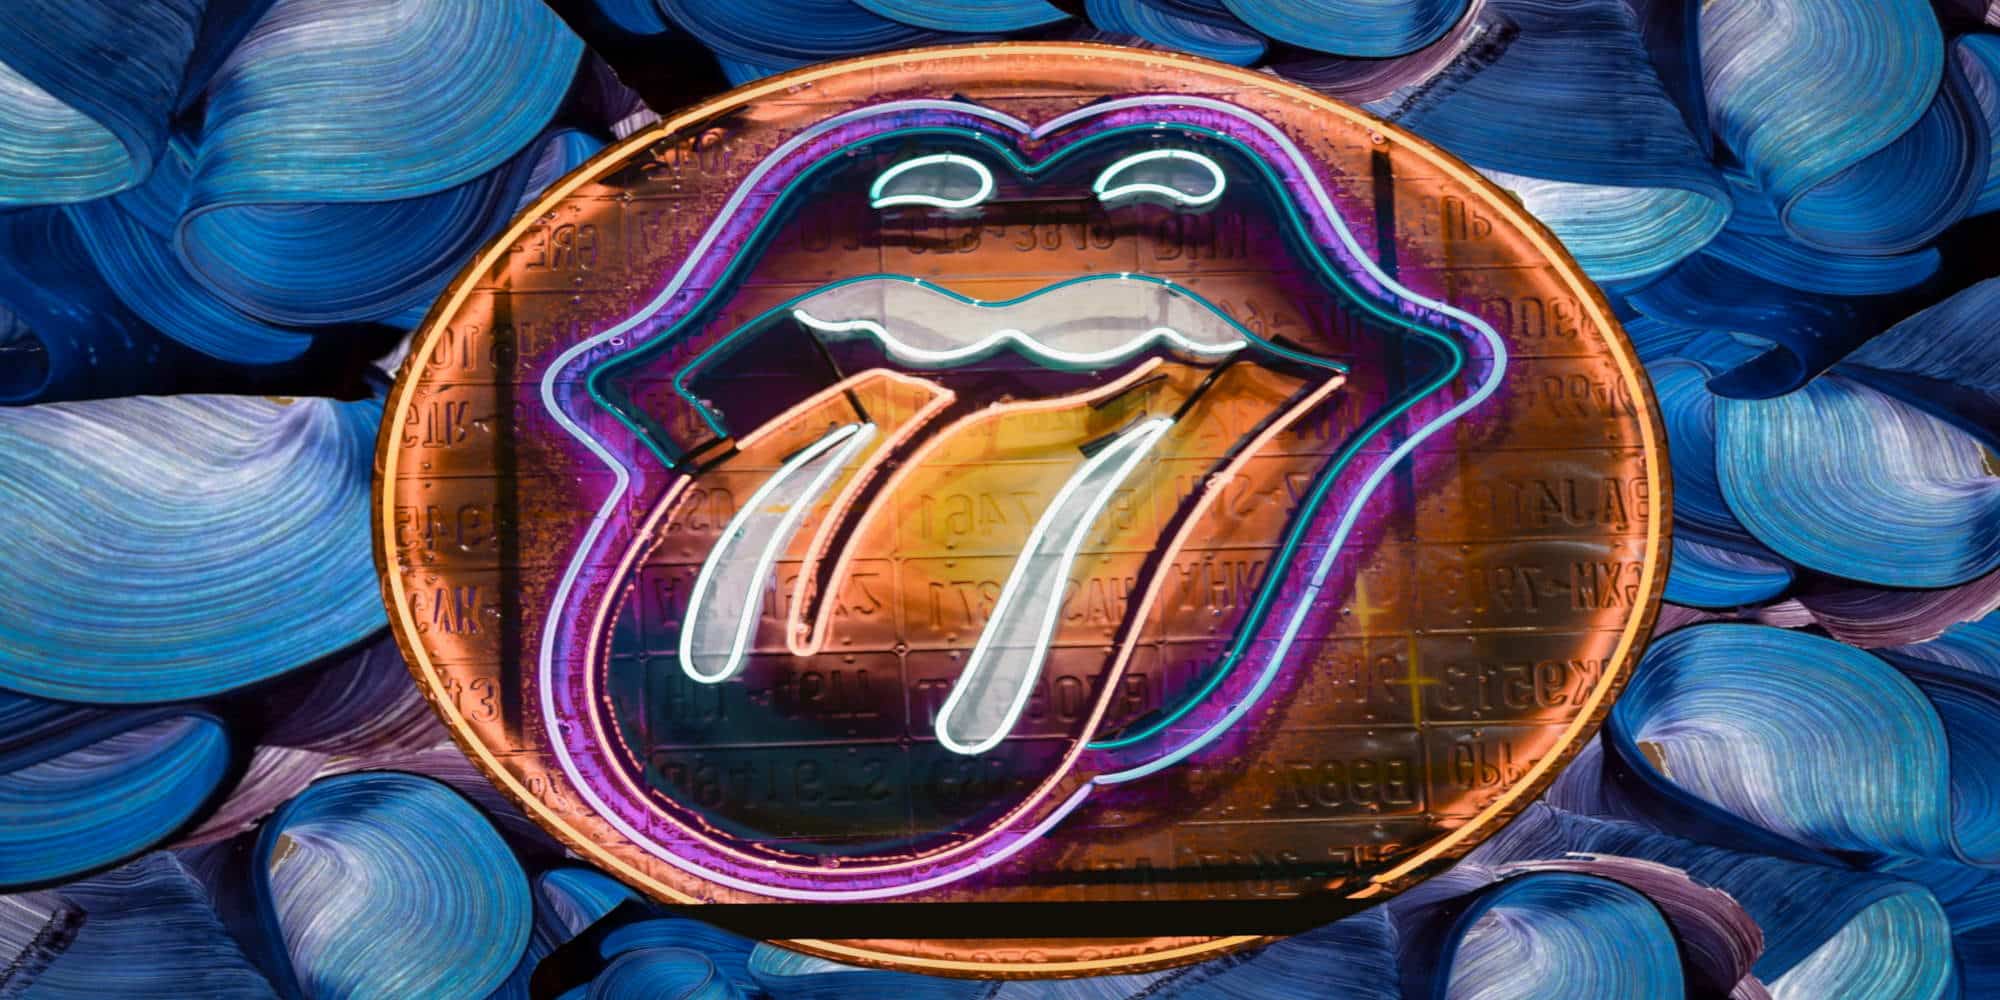 Η χαρακτηριστική γλώσσα των Rolling Stones